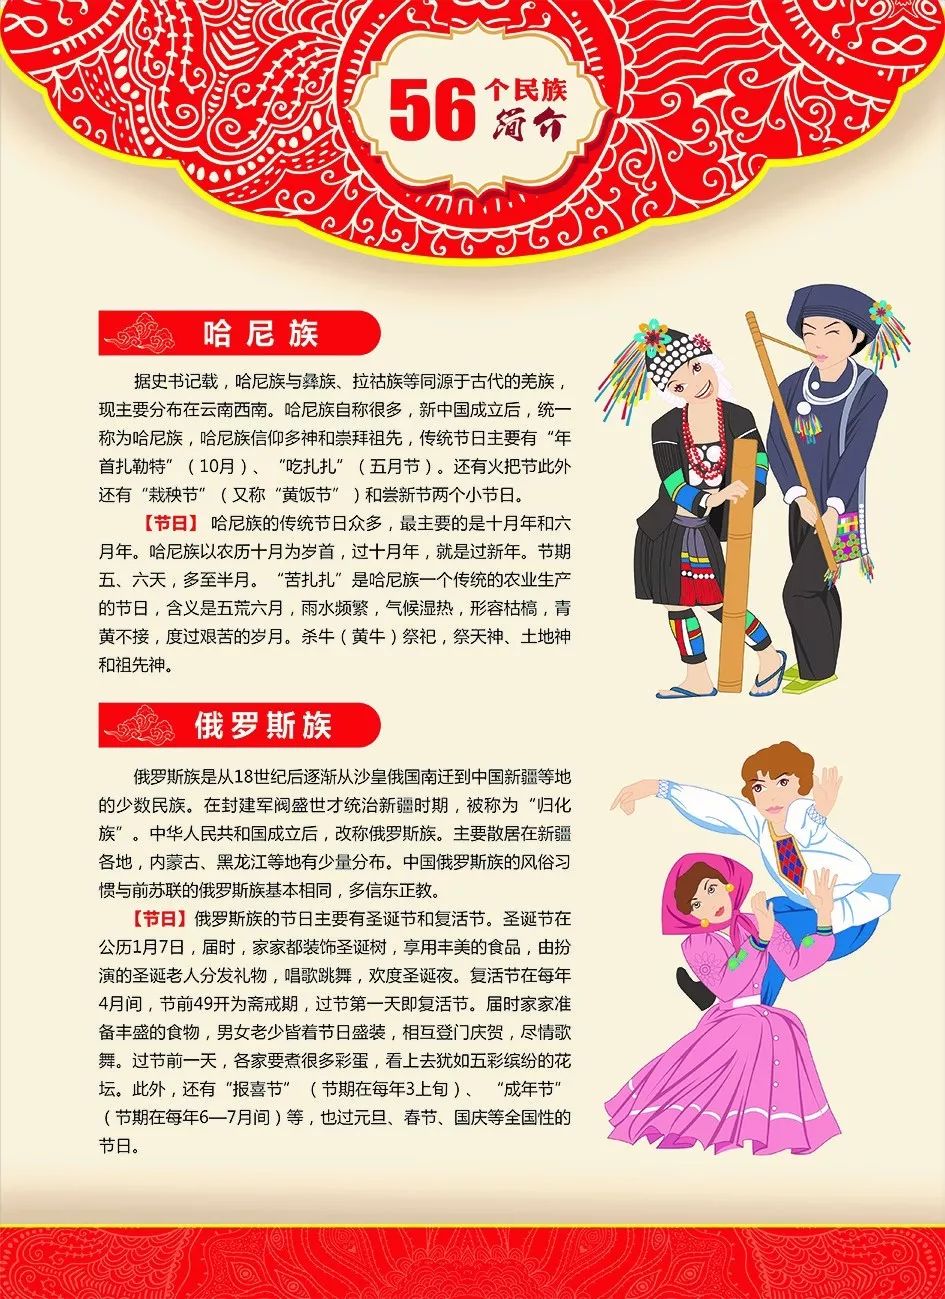 中国二十四节气之说中华民族风情之荟萃展览